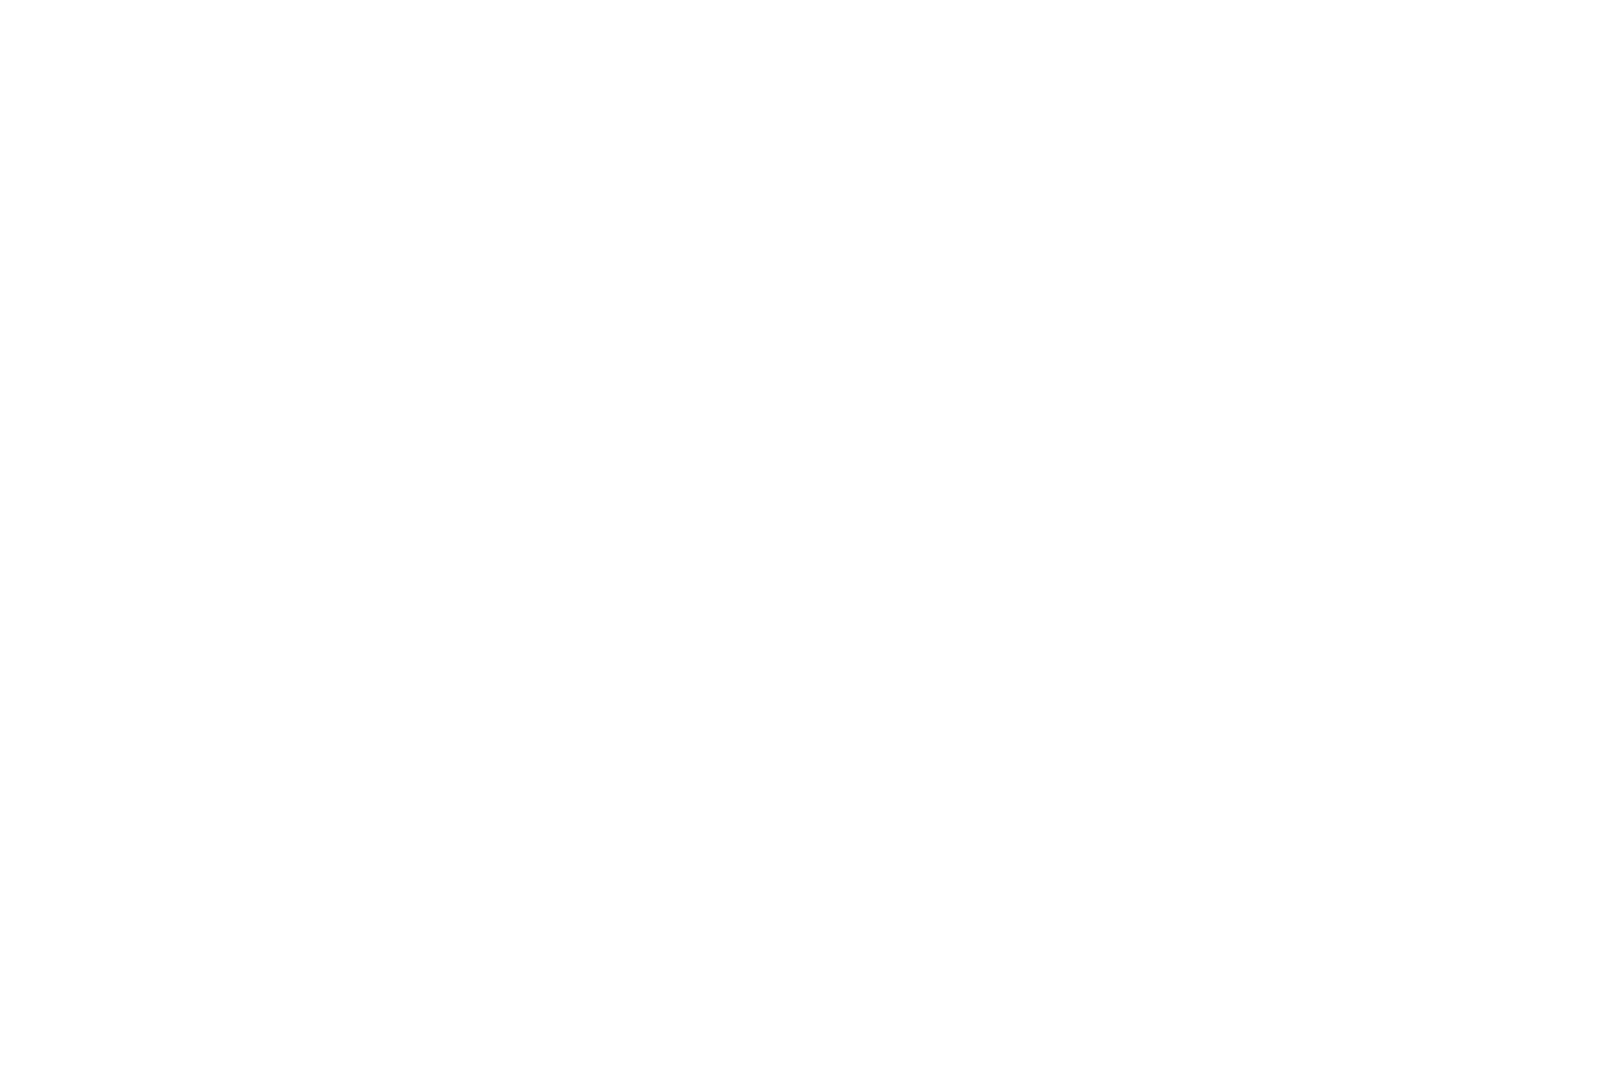 Ненецкая оленегонная лайка или шпиц со щенками у чума будки на стойбище ненцев оленеводов на Ямале в тундре Полярного Урала. Машкова Елена, Elena Mashkova фотограф фото